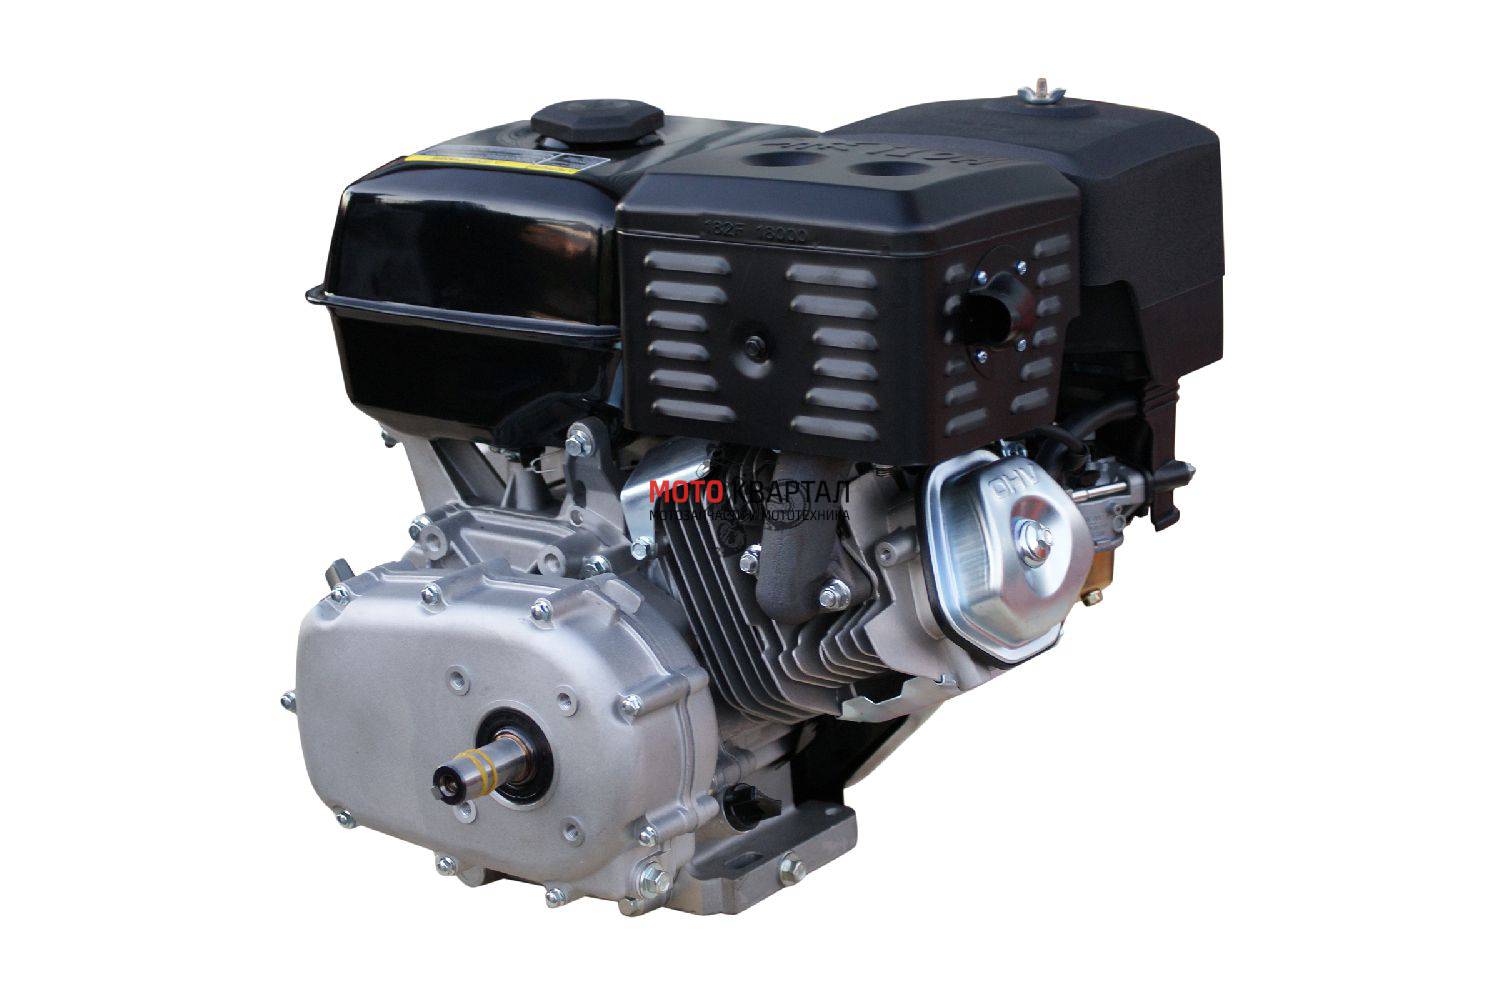 Купить мотор 10 л с. Двигатель Lifan 190fd-r. Lifan 15 л.с. 190f-r. Lifan 190fd-r. Бензиновый двигатель Лифан 15 л.с.